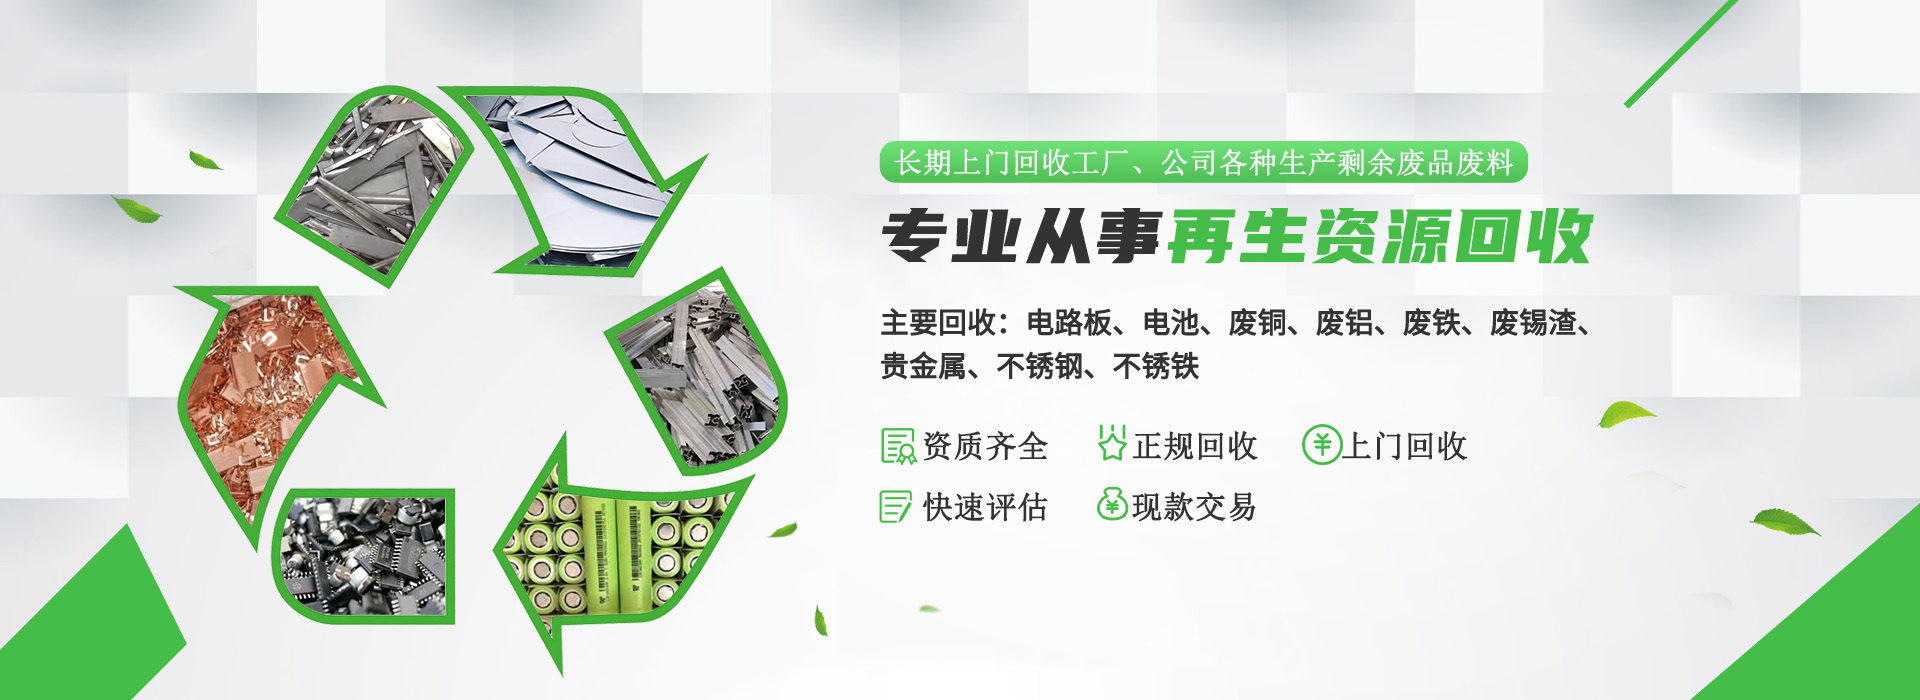 惠州廢銅回收